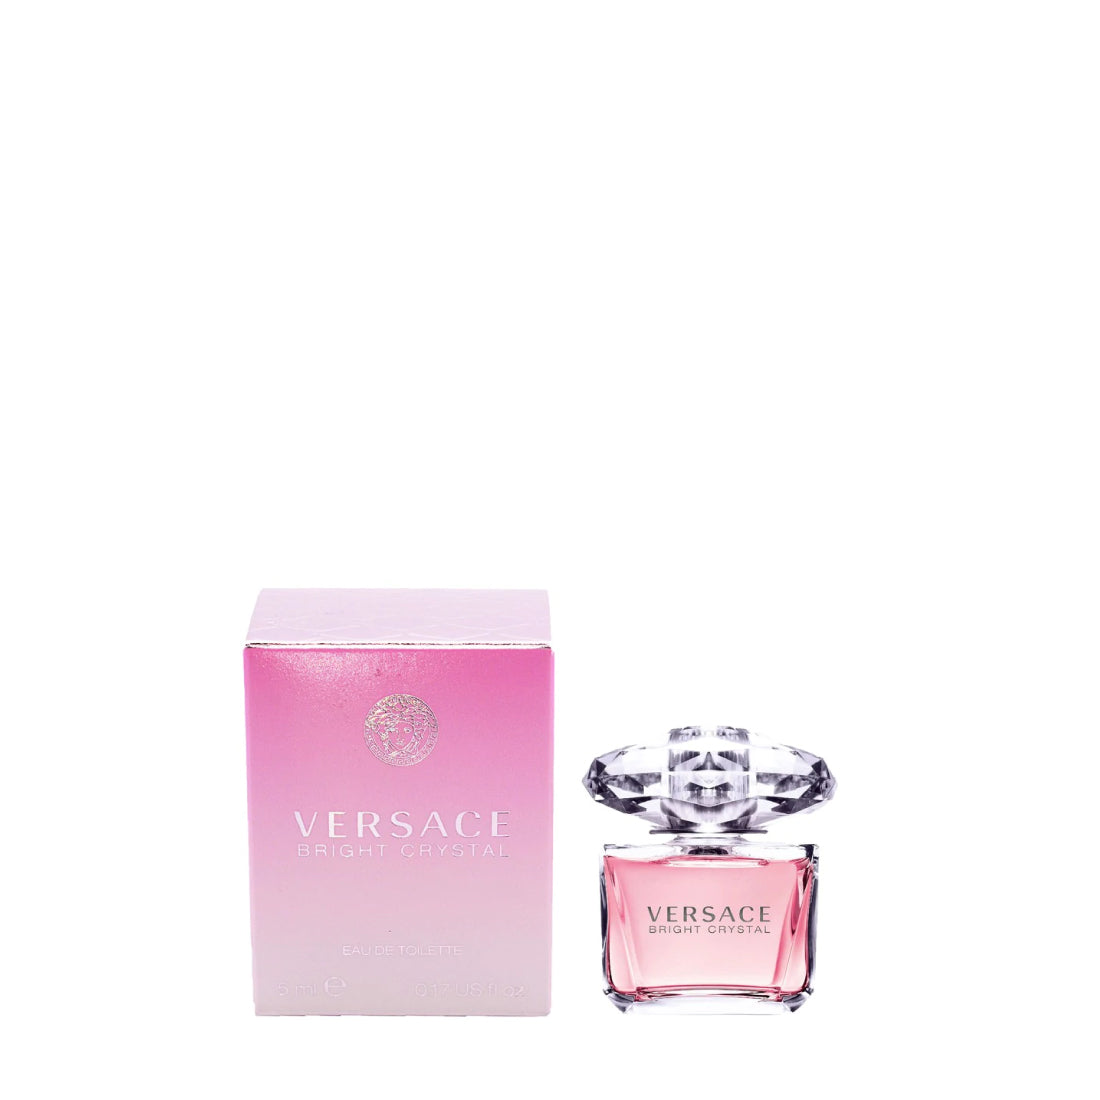 Perfume – Versace Eau Now | Women Crystal for Outlet De Plus Bright Toilette Buy